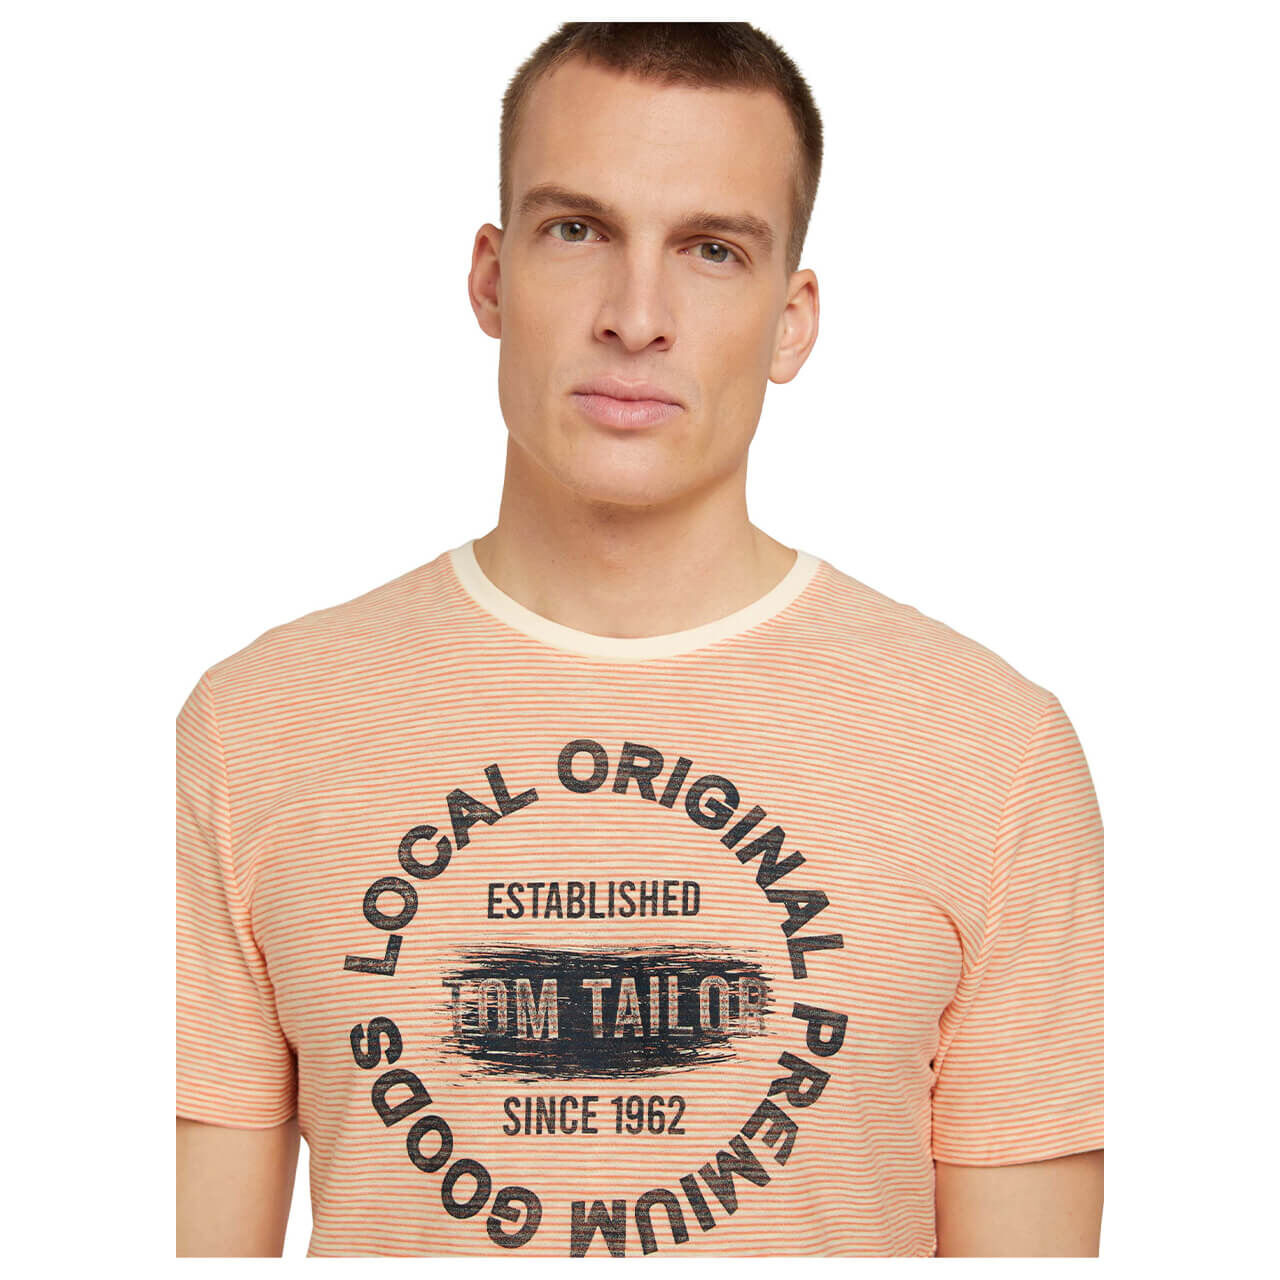 Tom Tailor T-Shirt für Herren in Hellorange mit Print, FarbNr.: 29164